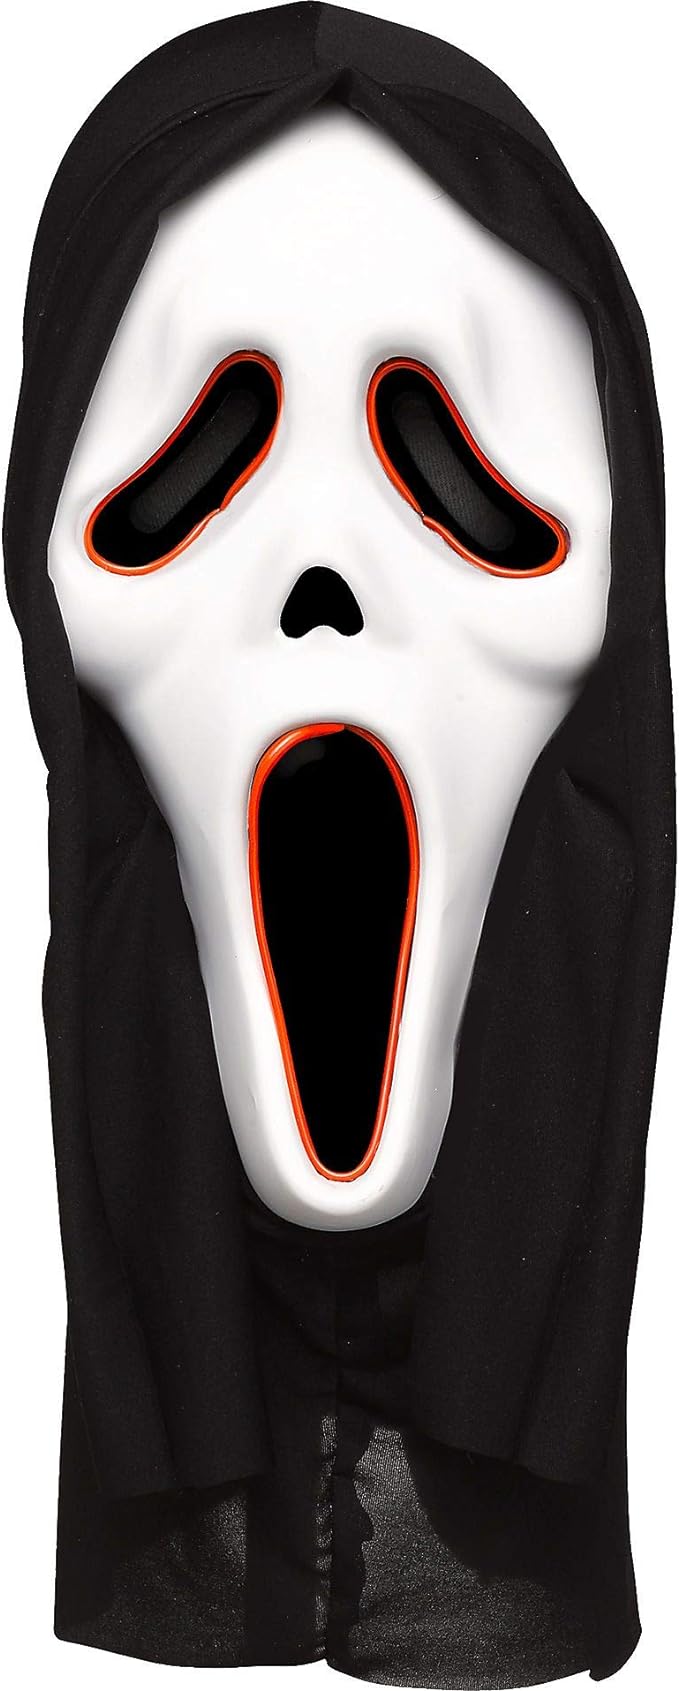 Scream Mask - Electro-luminescence - Adult